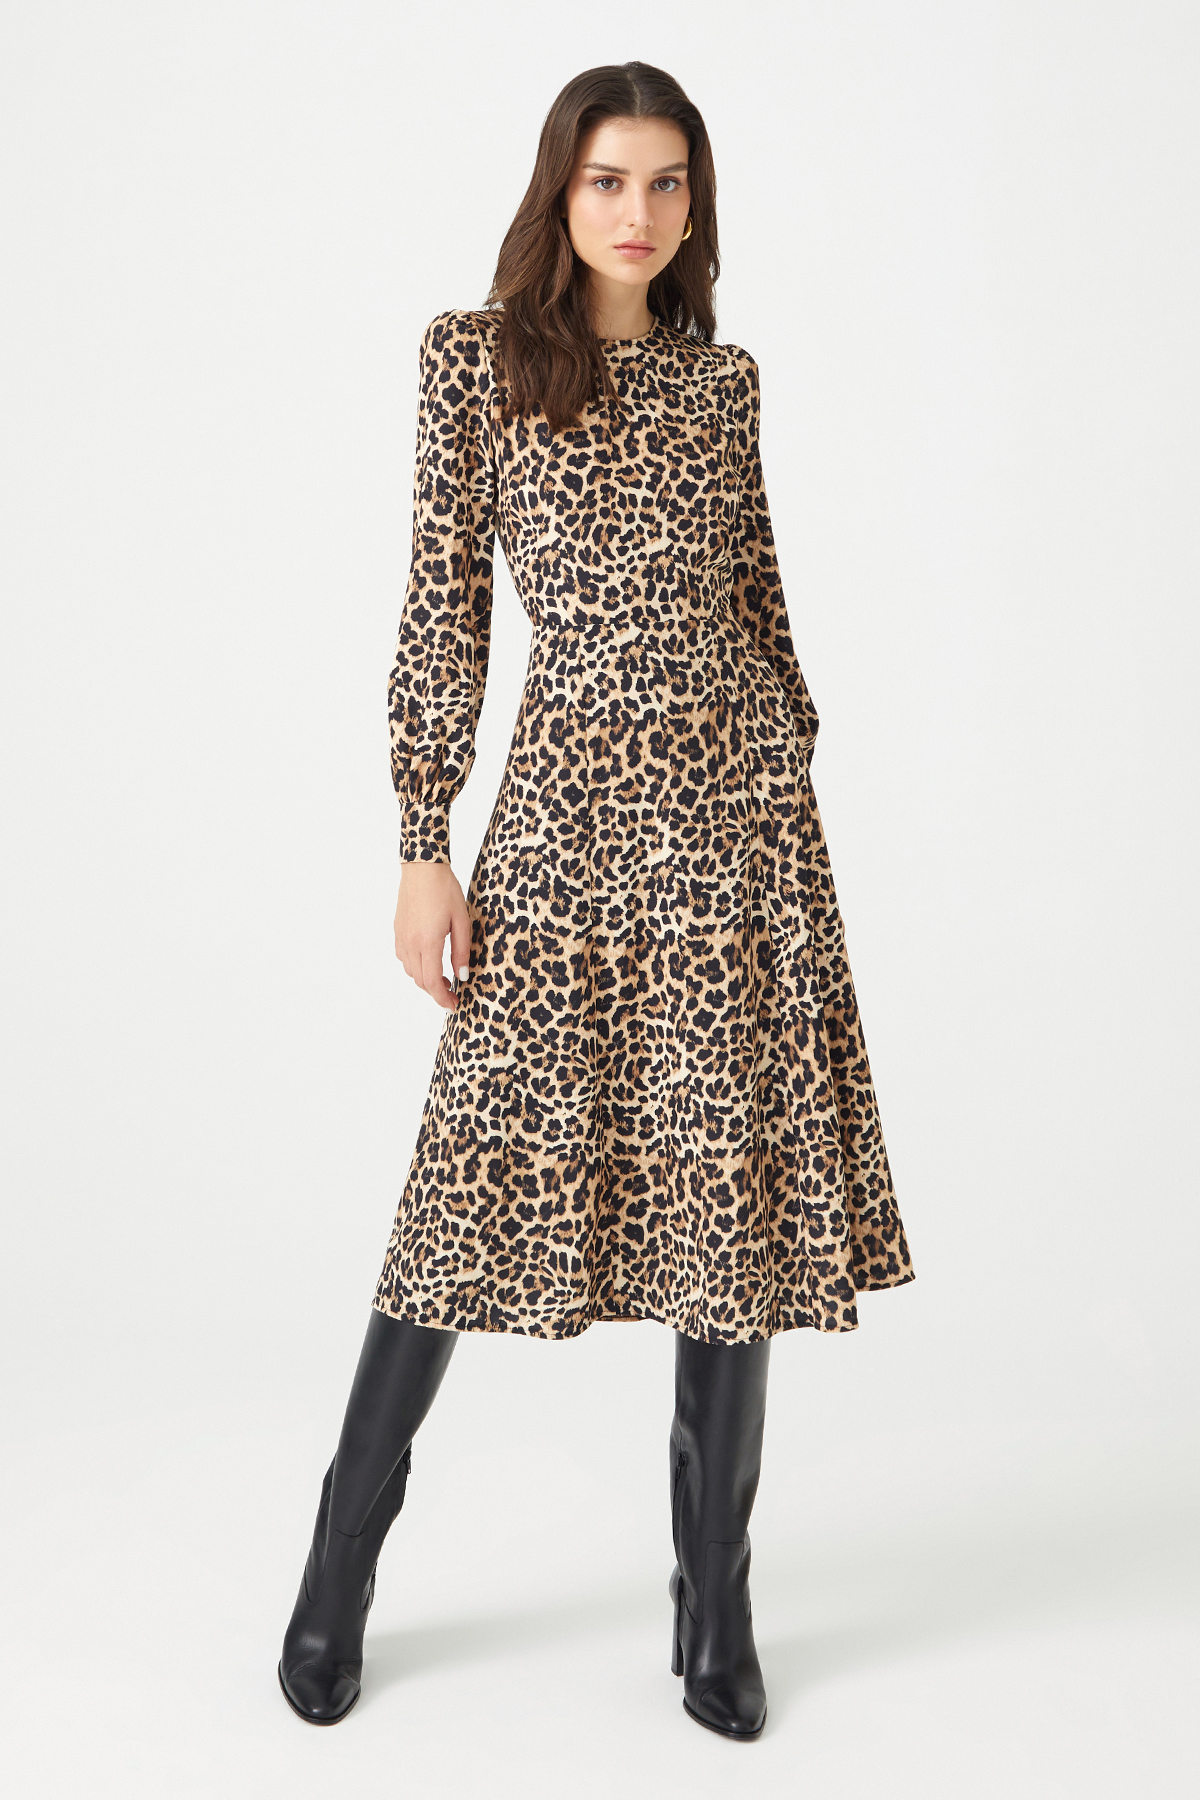 LINDY Leopard Print Backless Midi Dress